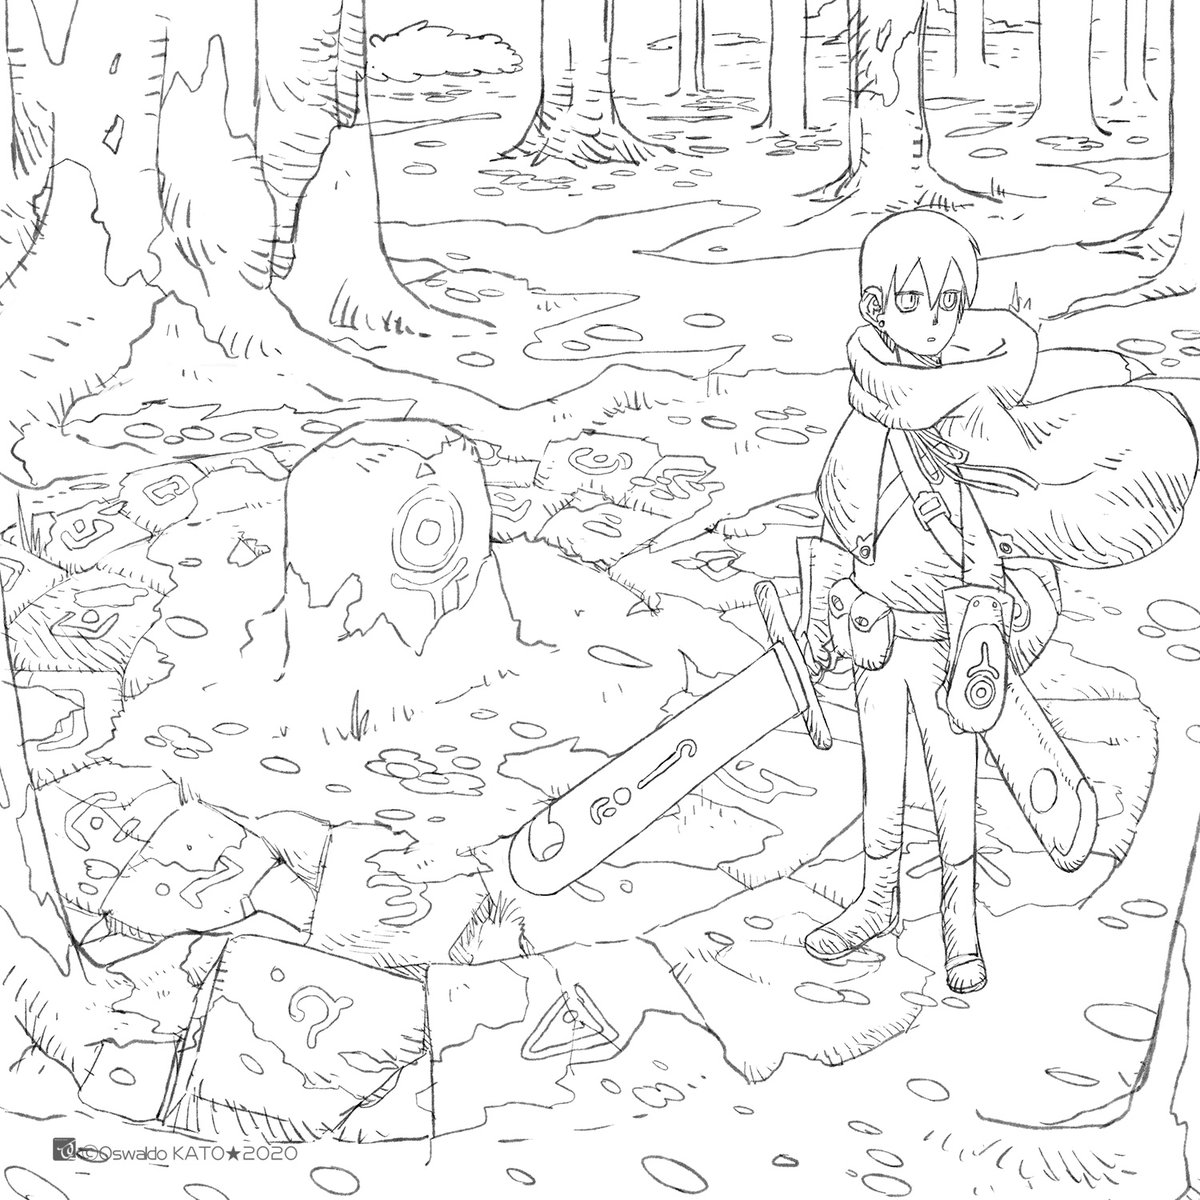 「秘密の森」
珍しく線画もそれなりに描いたので貼っておきます。
ぬりえにどぞー(塗ったら教えてくださいね) 